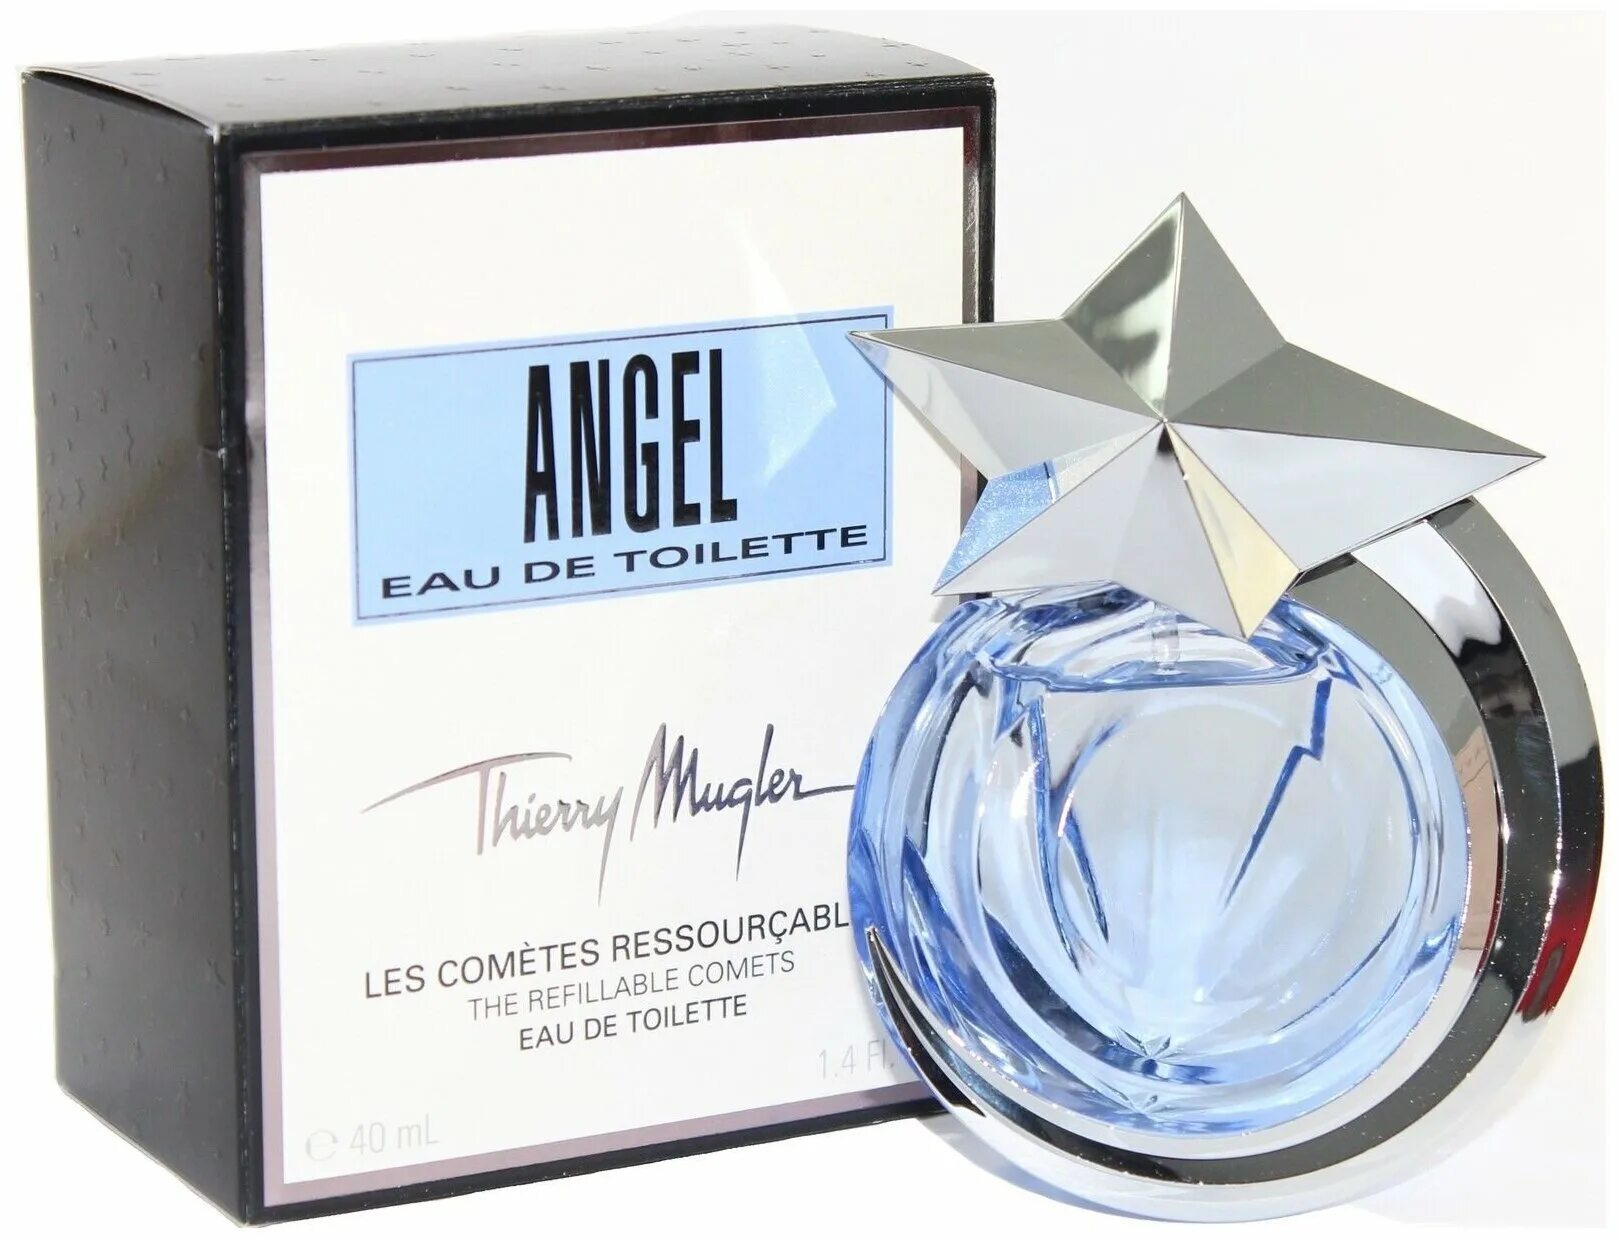 Мюглер ангел туалетная вода. Тьерри Мюглер ангел туалетная вода 2011. Тьерри Мюглер ангел. Thierry Mugler Angel туалетная вода 80 мл.